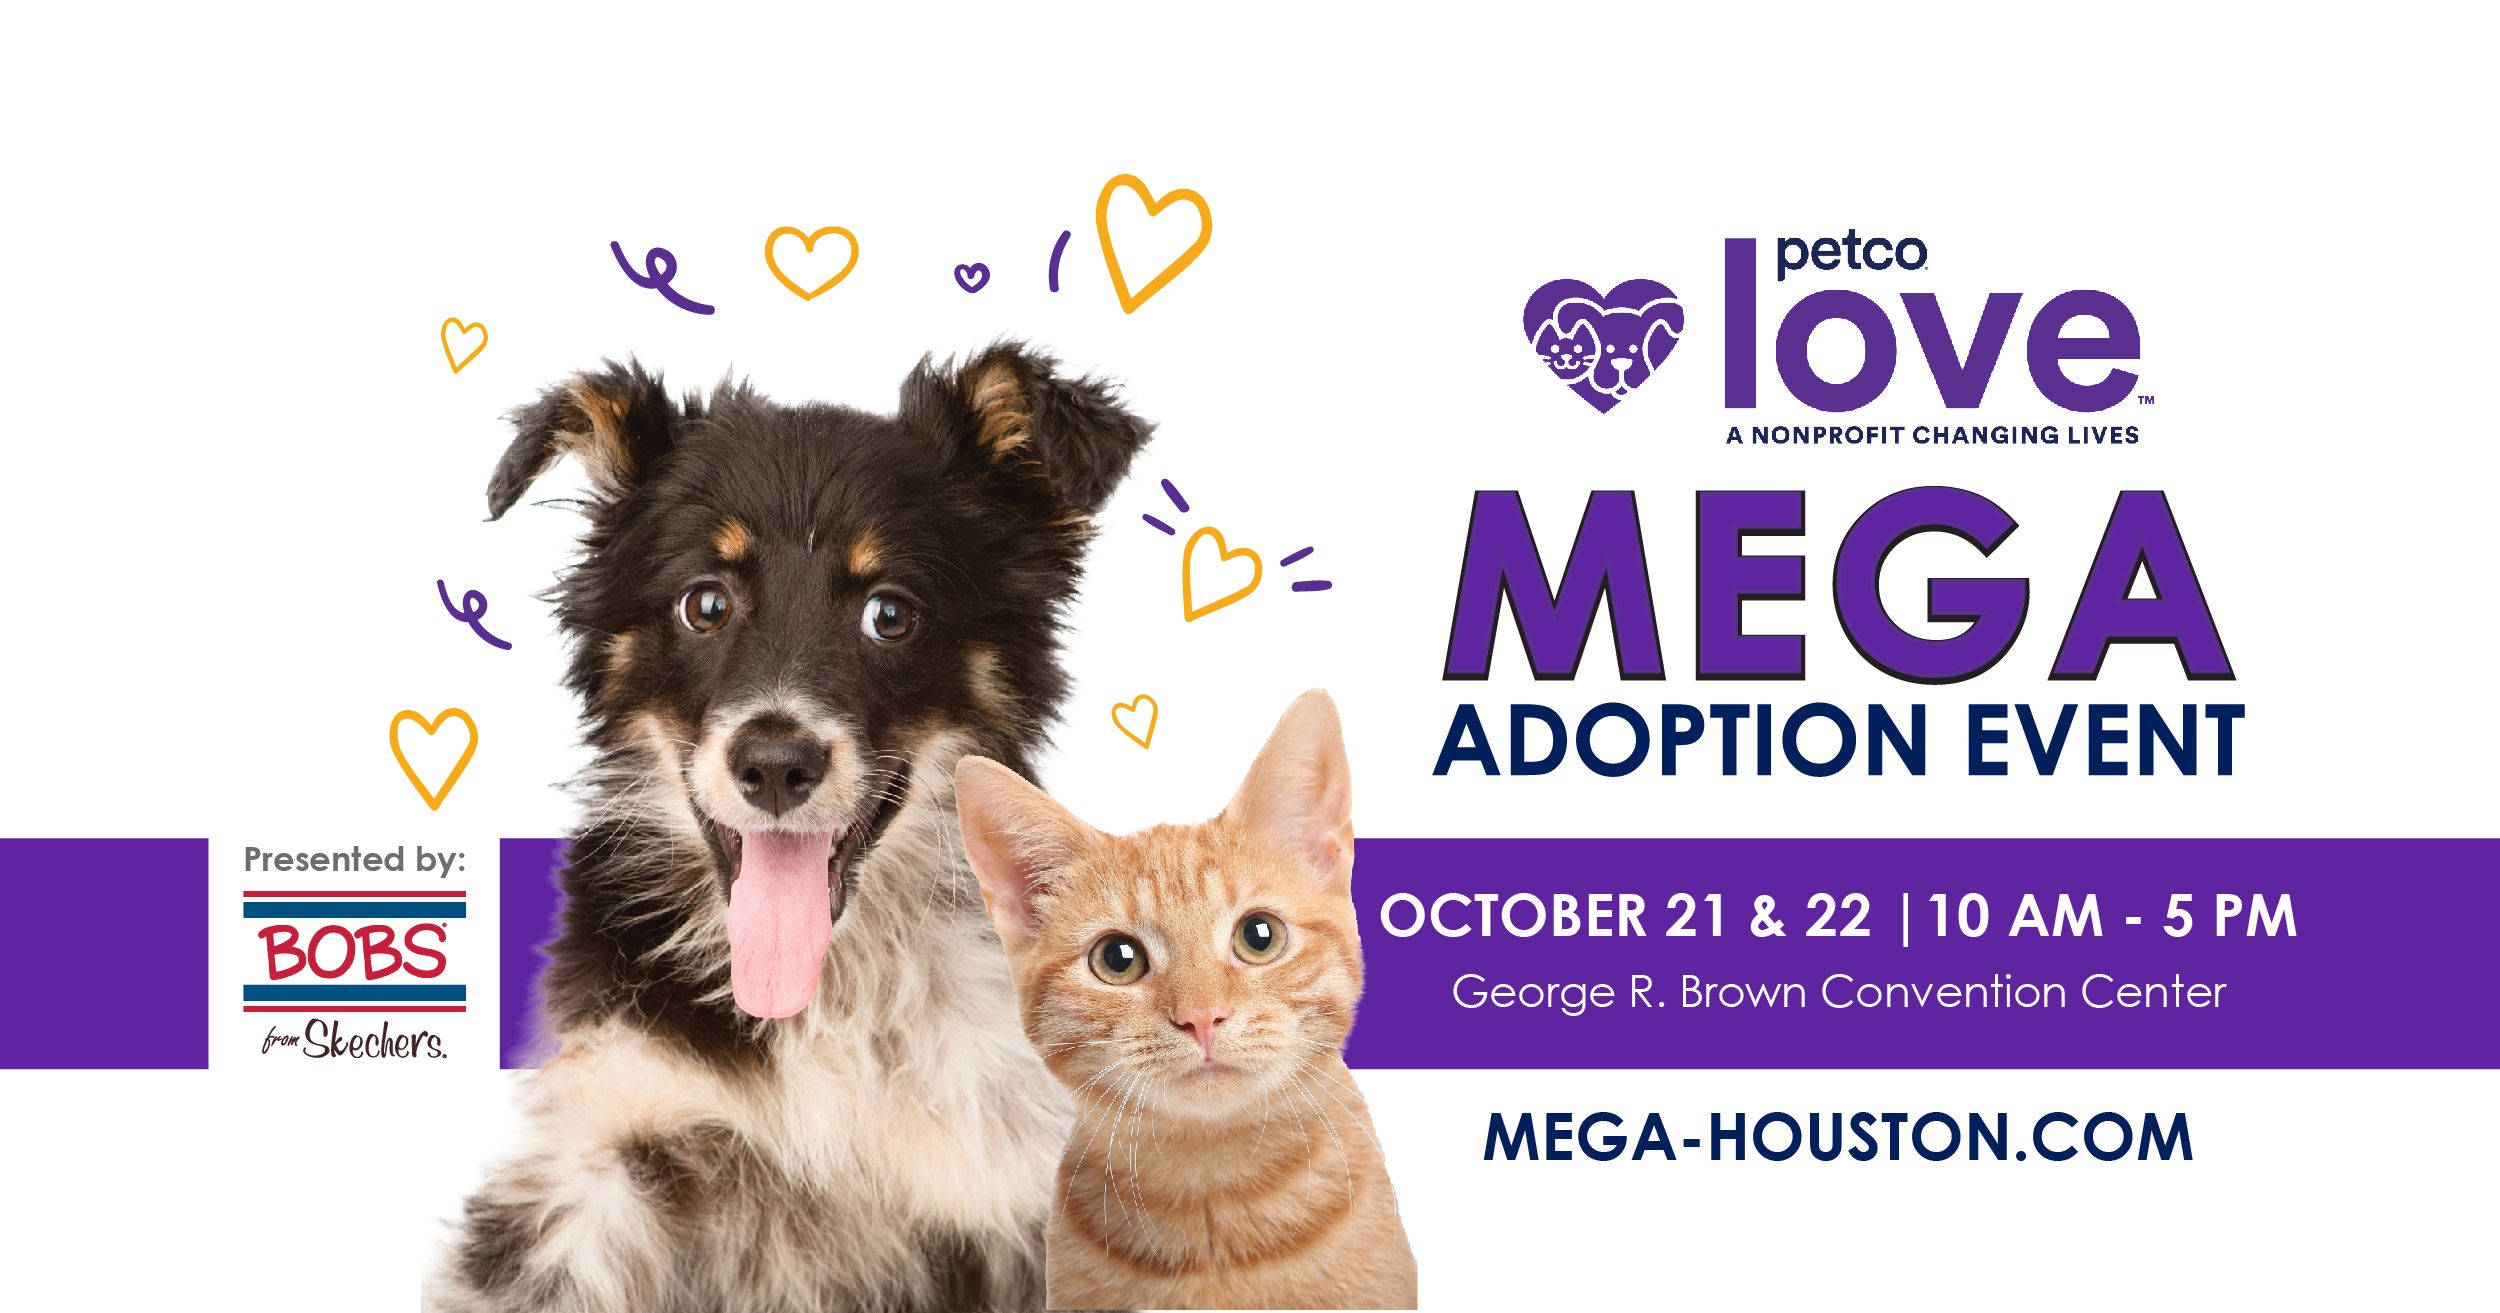 Petco Love Mega Adoption Event